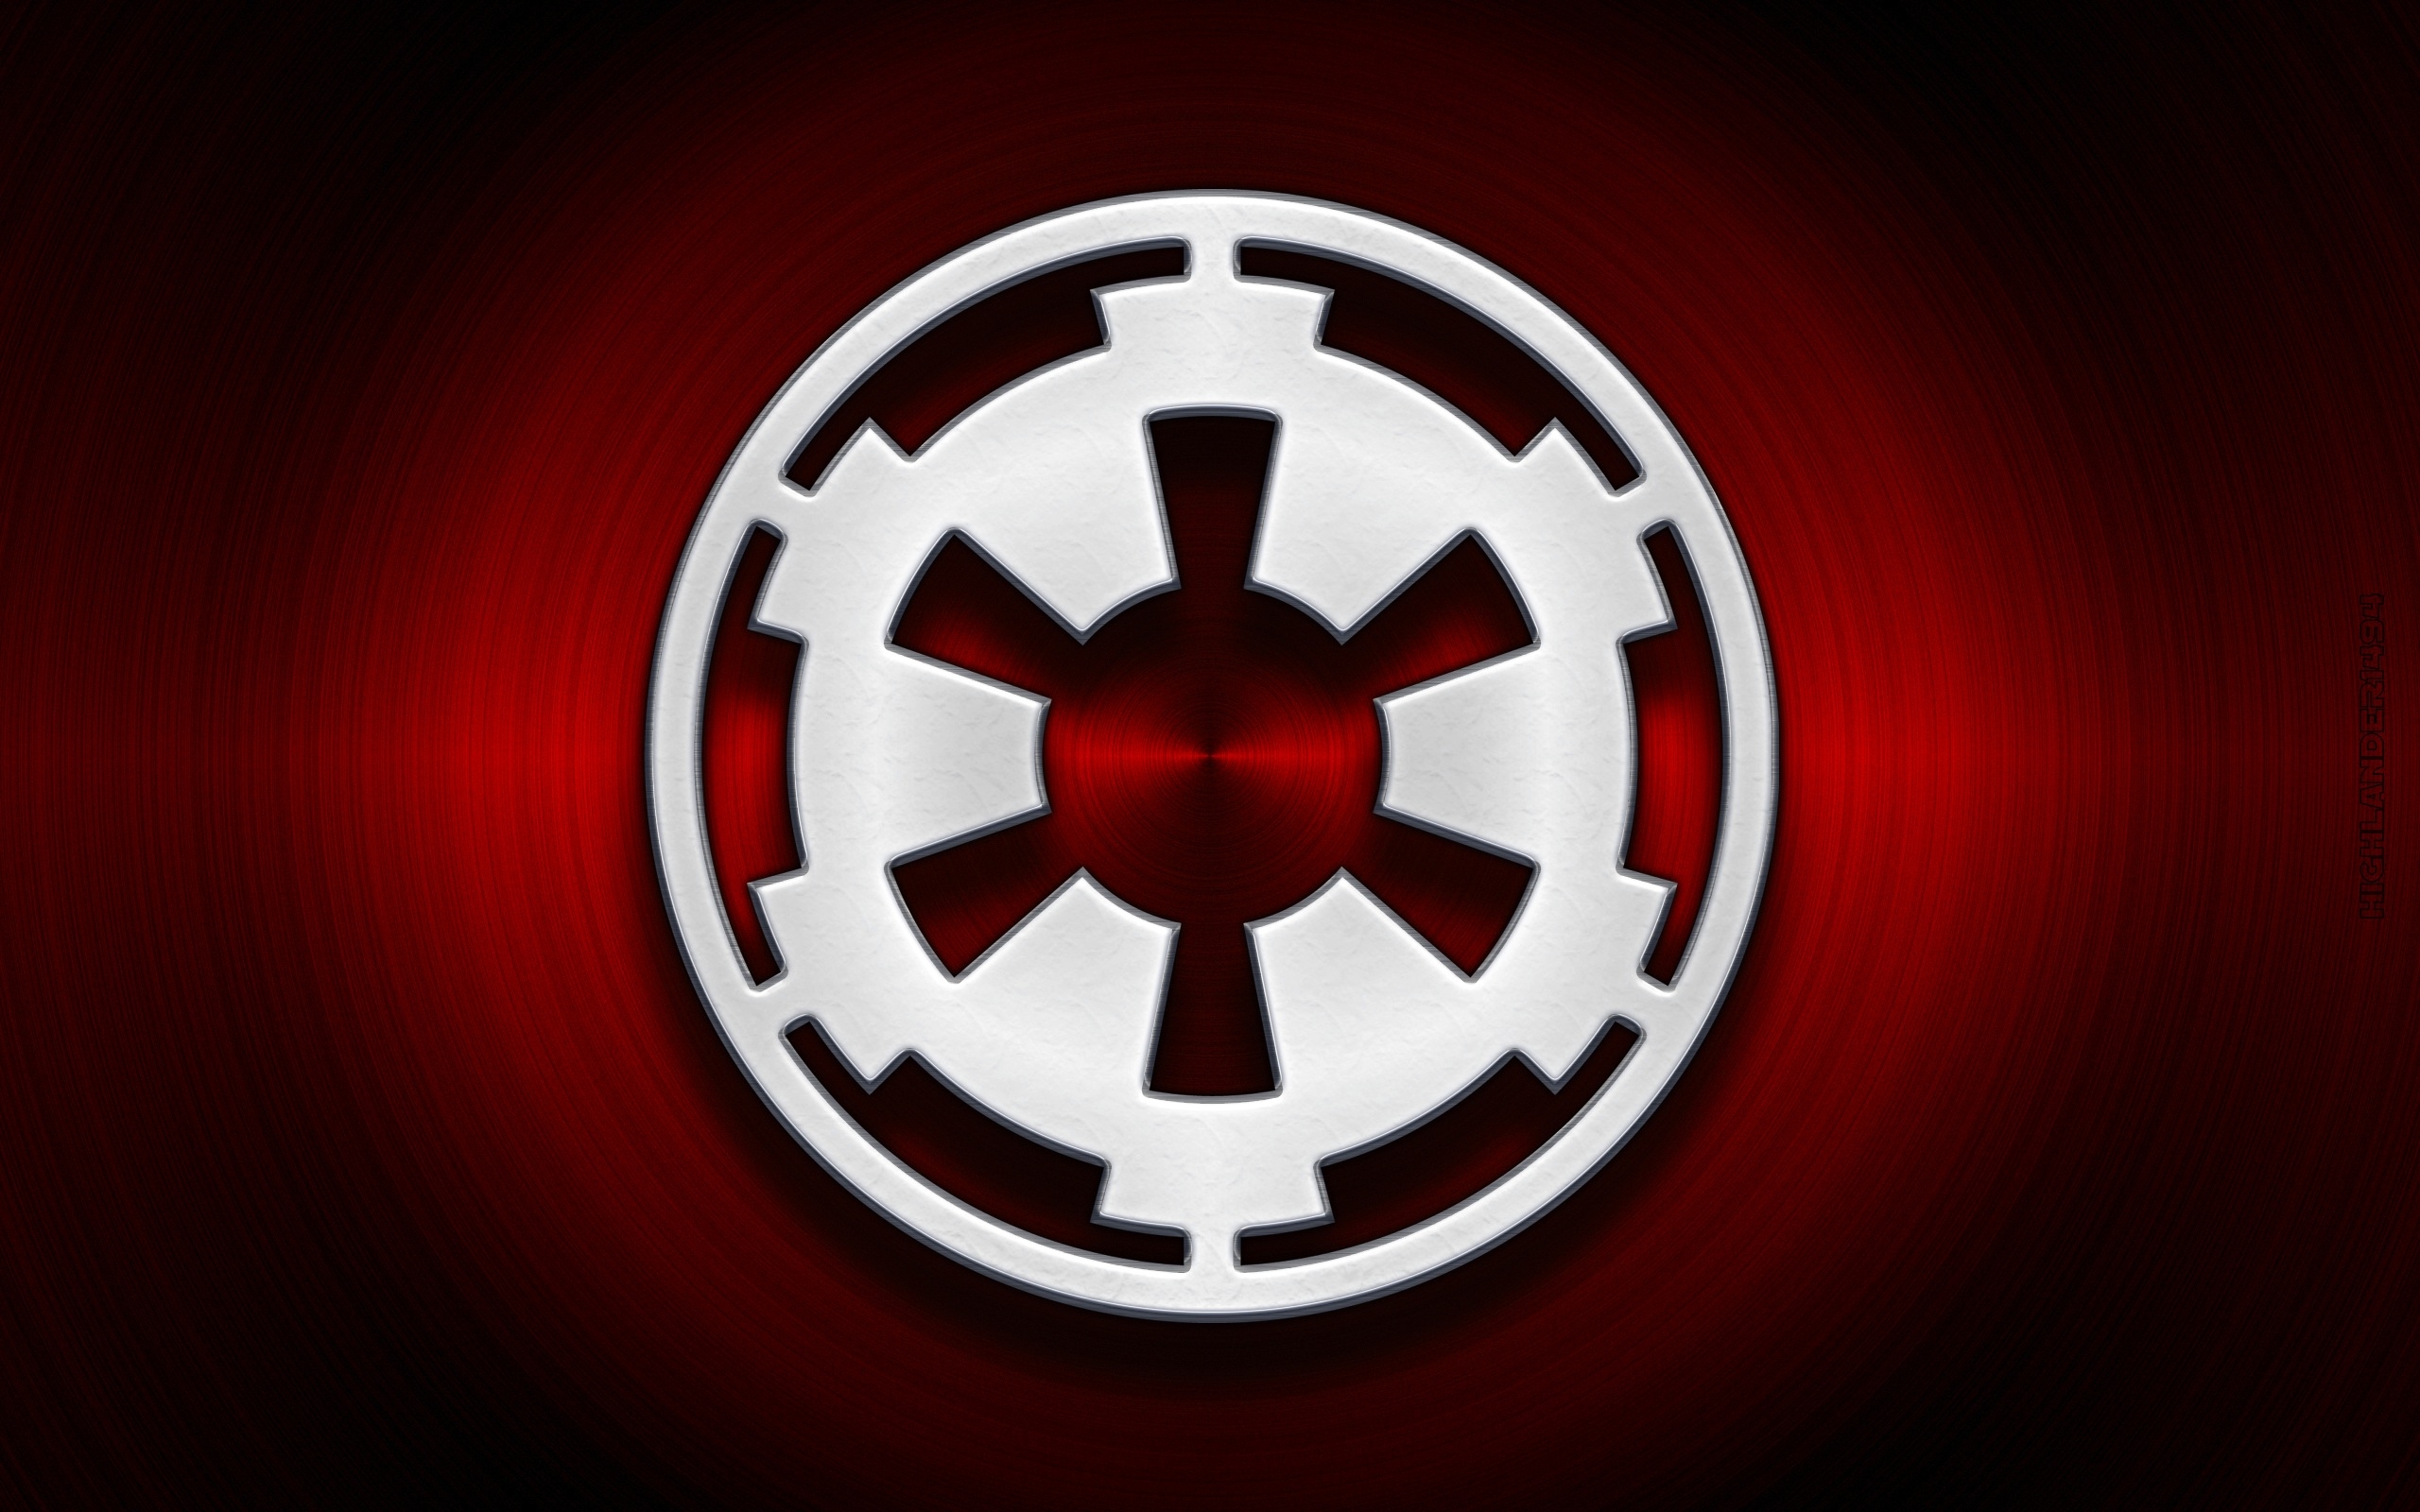 Star Wars Empire Logo Wallpaper